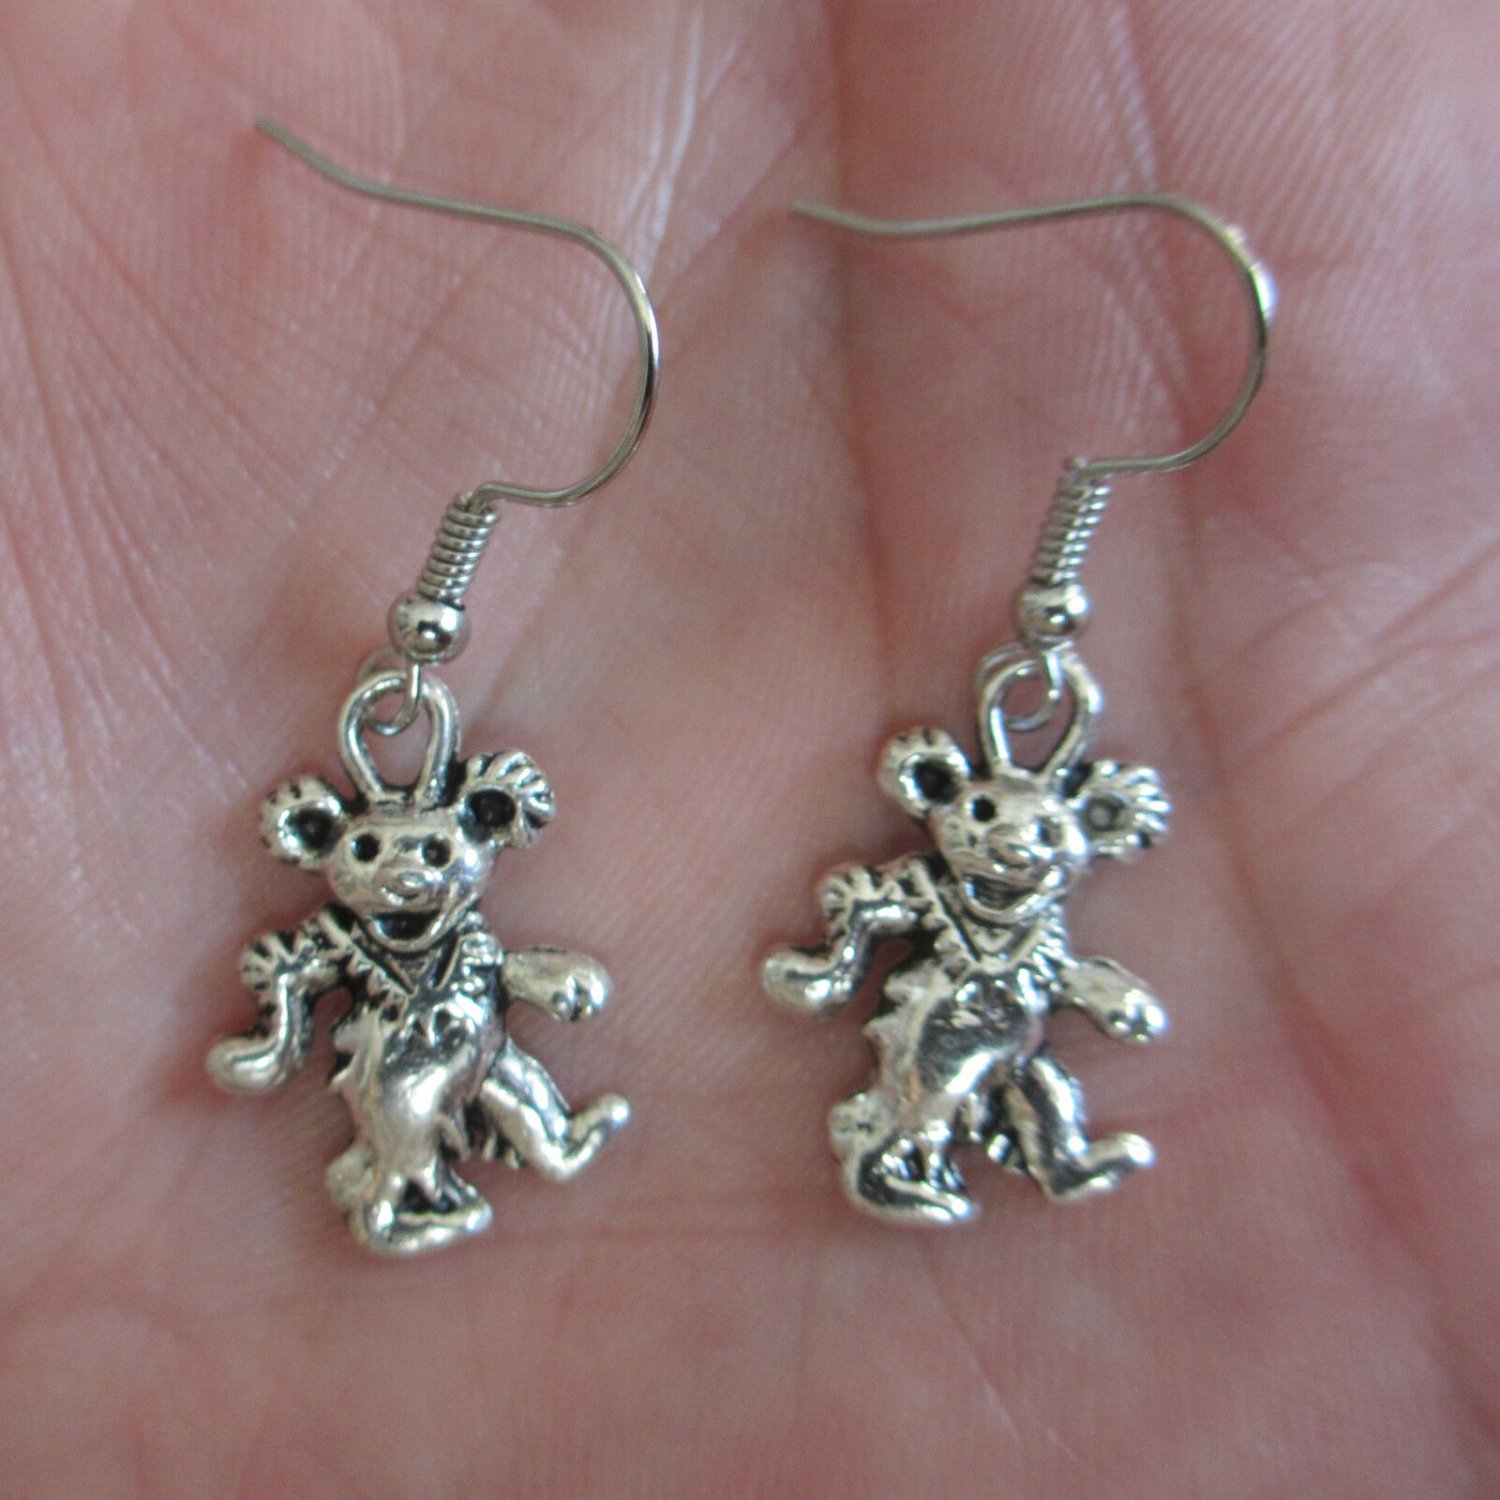 Dancing Bear Charm Minimalist Earrings - Silver tone Deadhead jewelry